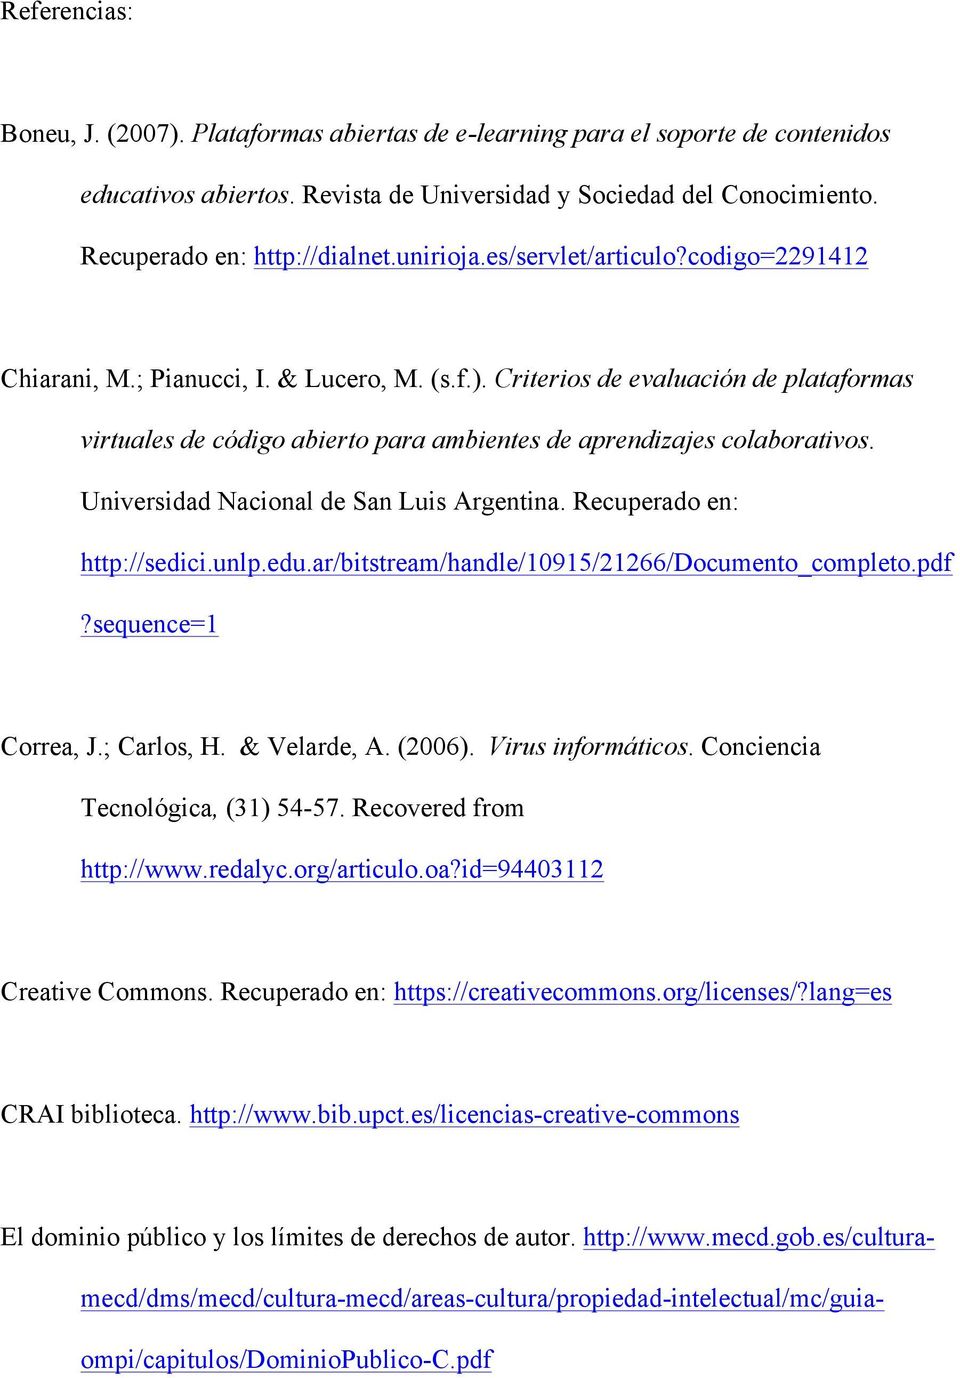 Criterios de evaluación de plataformas virtuales de código abierto para ambientes de aprendizajes colaborativos. Universidad Nacional de San Luis Argentina. Recuperado en: http://sedici.unlp.edu.